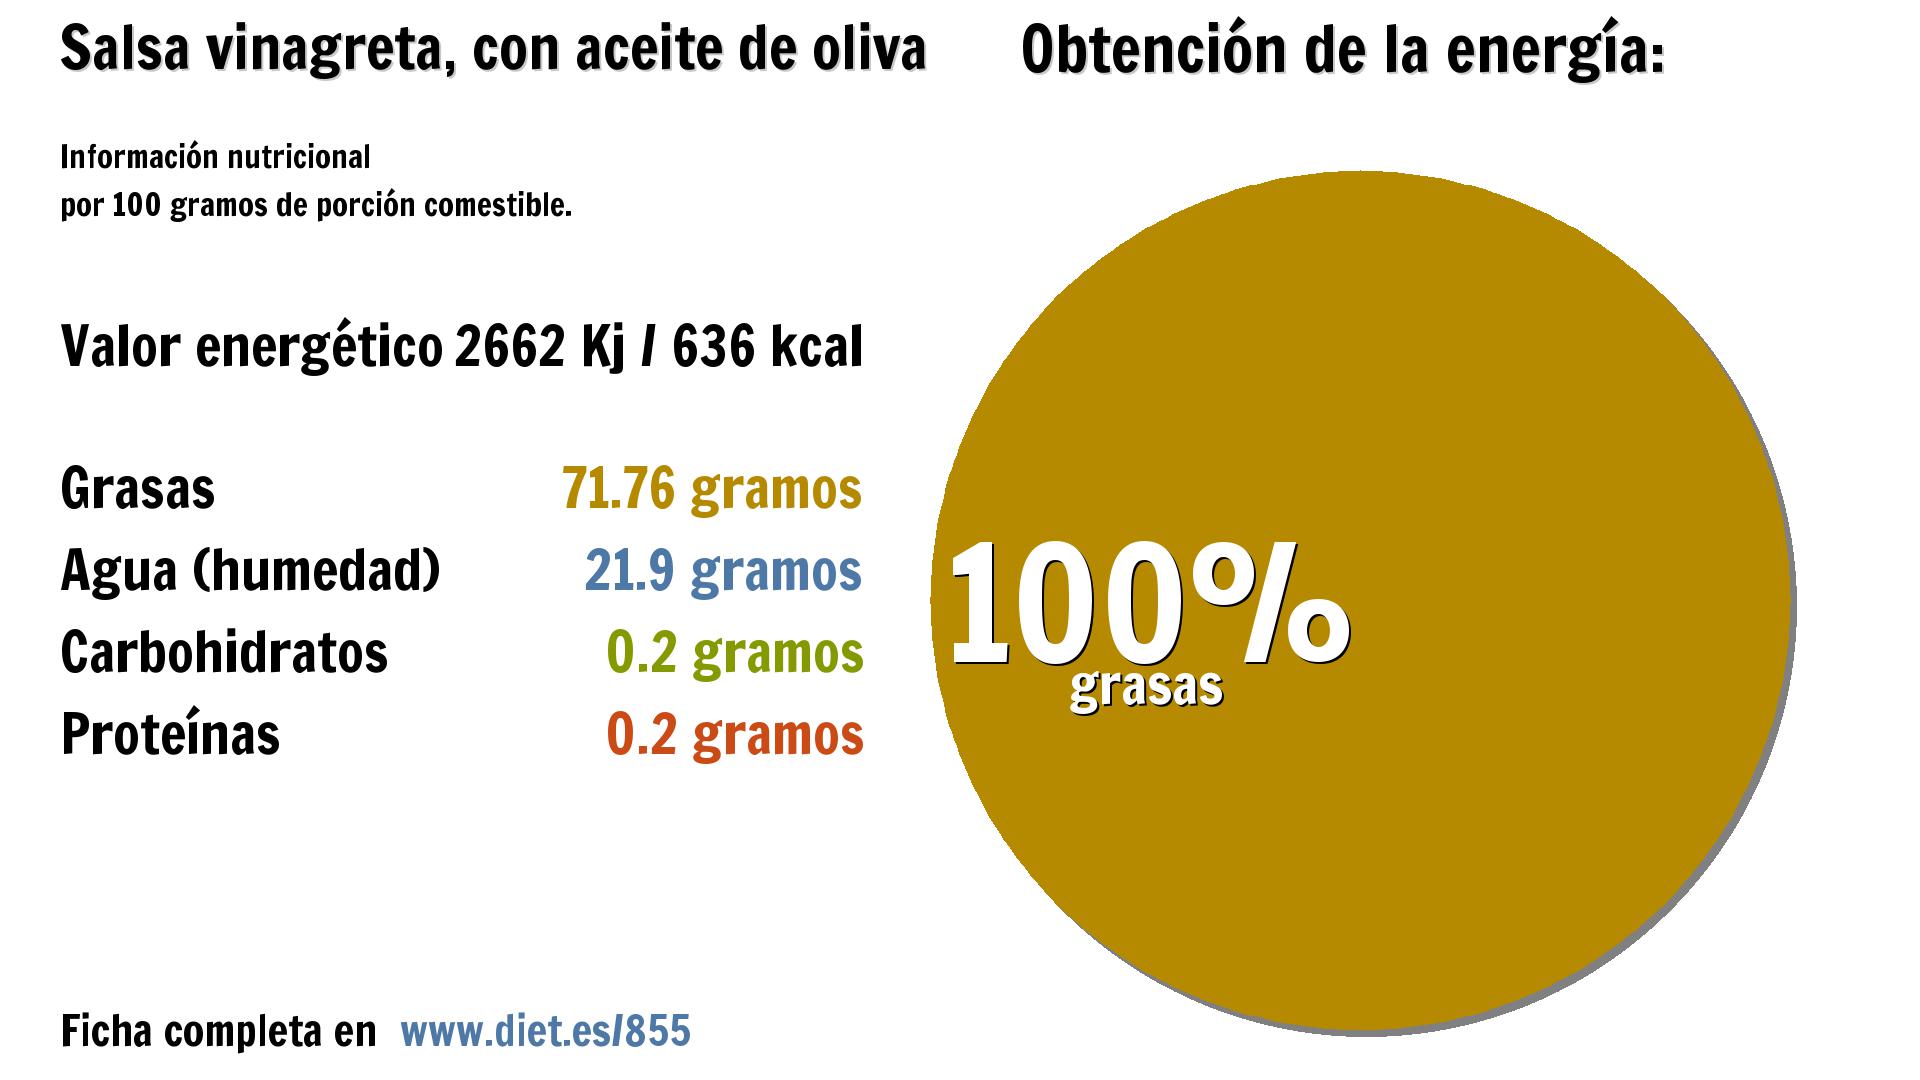 Salsa vinagreta, con aceite de oliva: energía 2662 Kj, grasas 72 g. y agua 22 g.